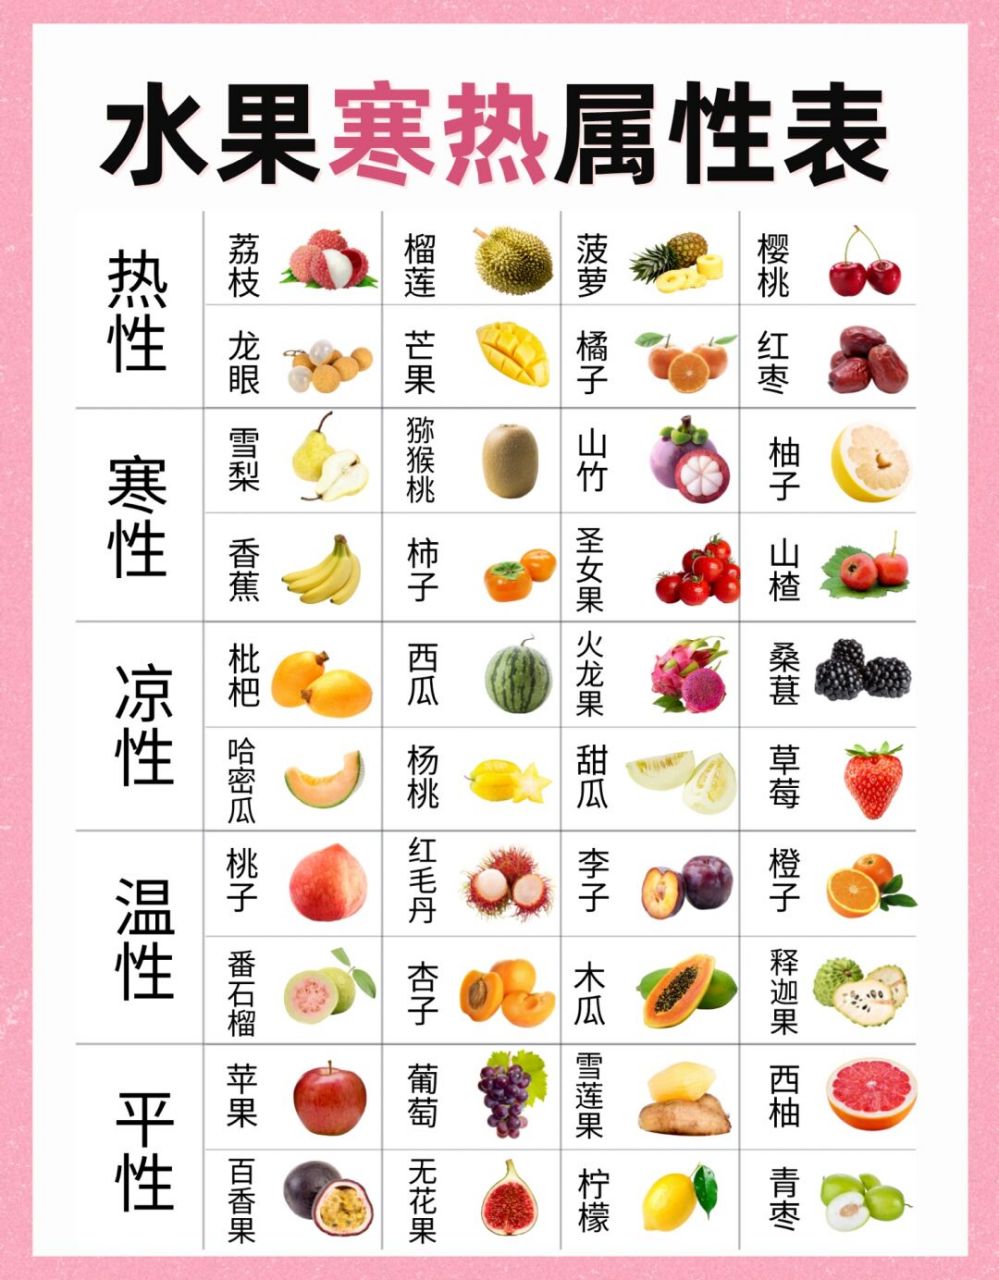 水果寒热属性分类97 养生女孩看过来98 水果分为热性,寒性,凉性